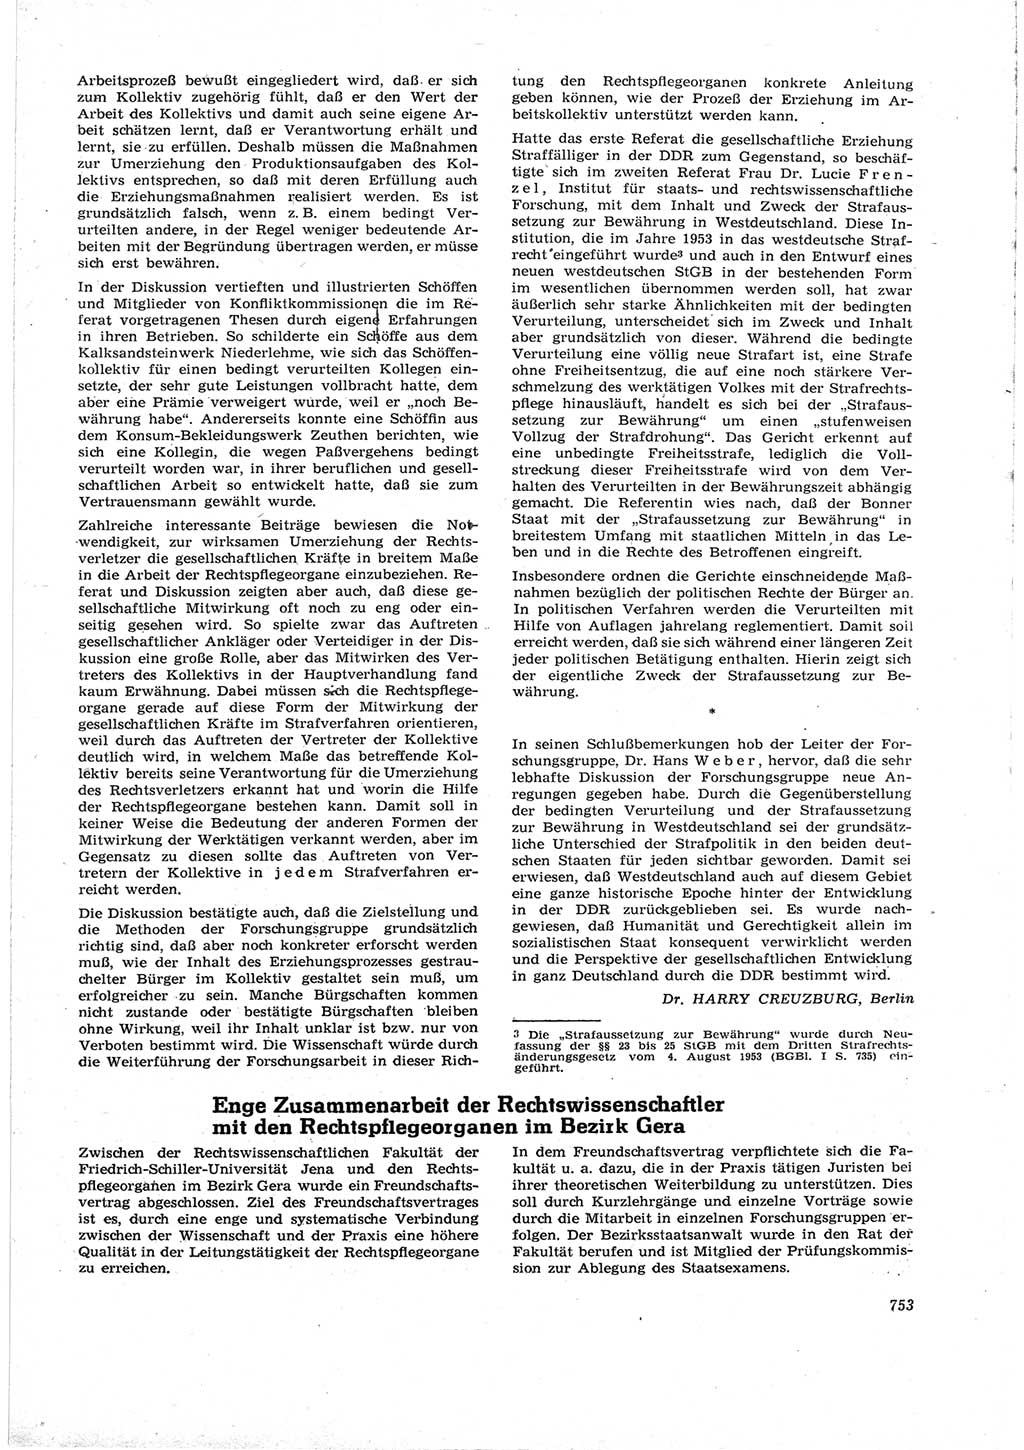 Neue Justiz (NJ), Zeitschrift für Recht und Rechtswissenschaft [Deutsche Demokratische Republik (DDR)], 17. Jahrgang 1963, Seite 753 (NJ DDR 1963, S. 753)